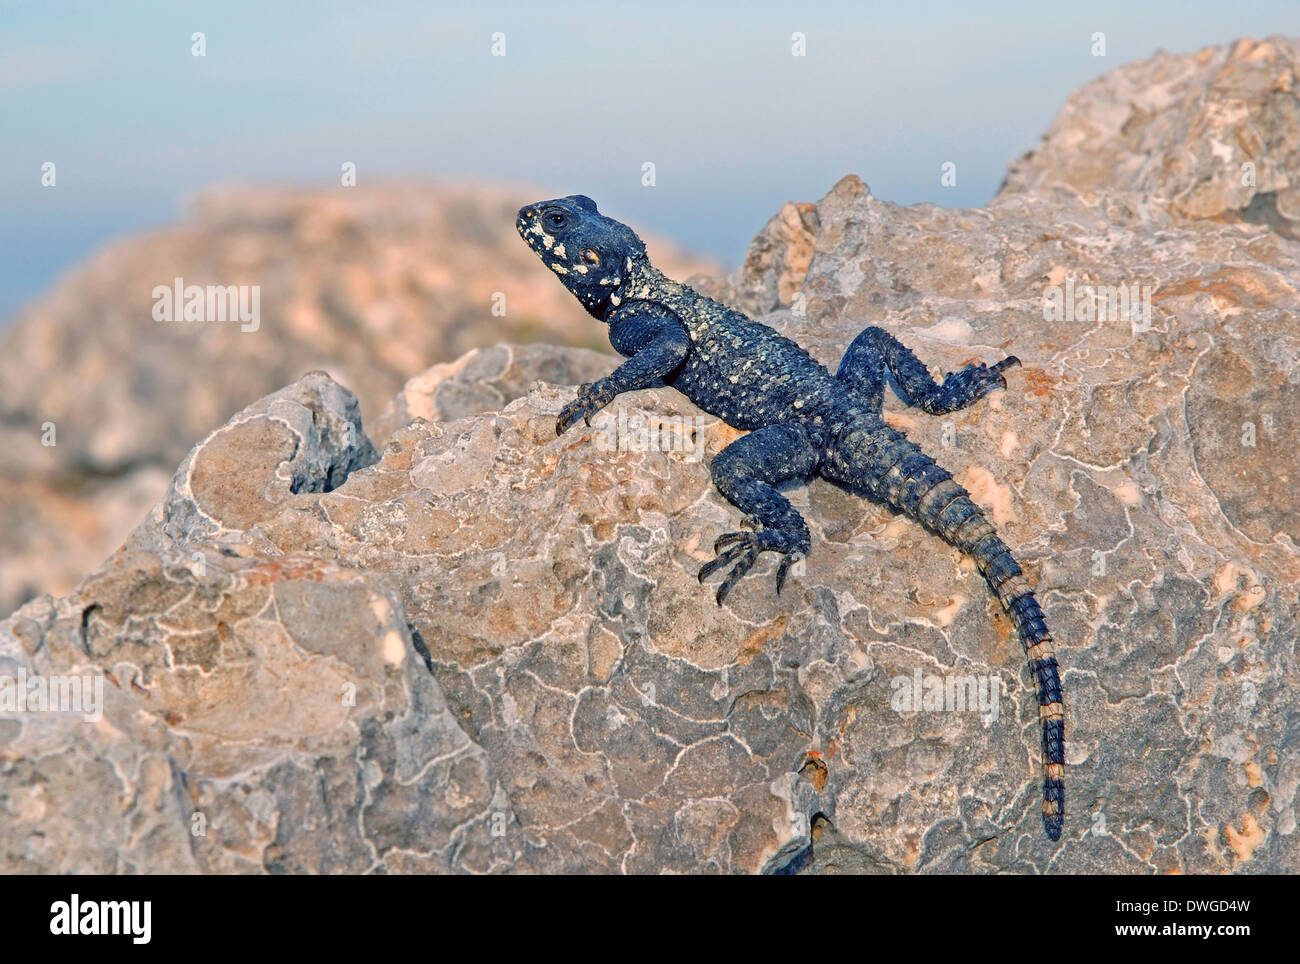 Agama lizard, Stellagama stellio su una roccia Foto Stock